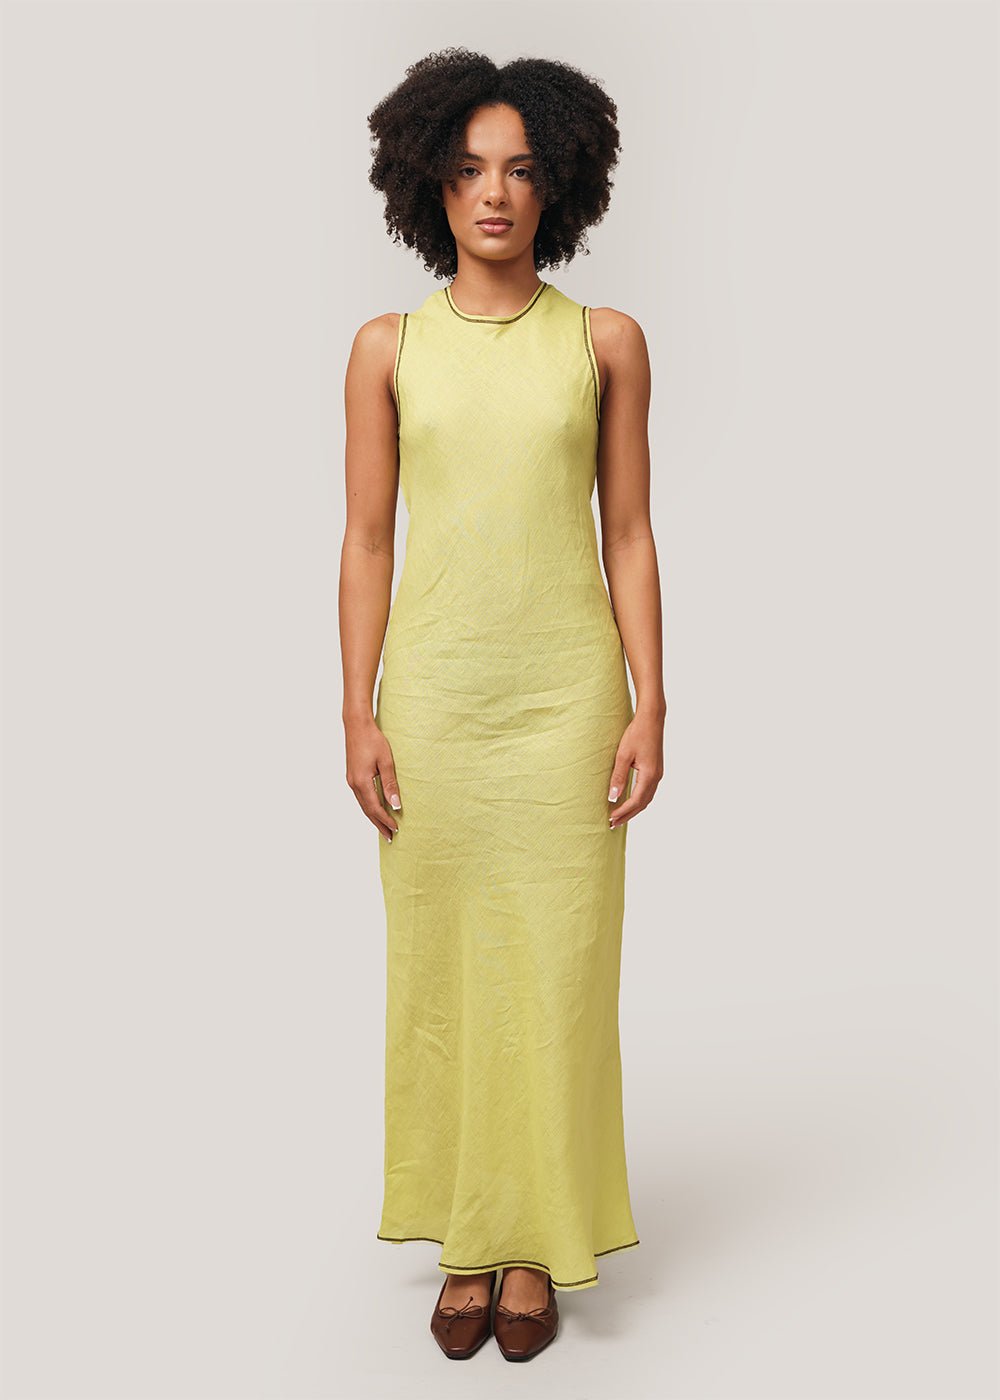 Baserange Lime Dydine Tank Dress - New Classics Studios Sustainable Ethical Fashion Canada